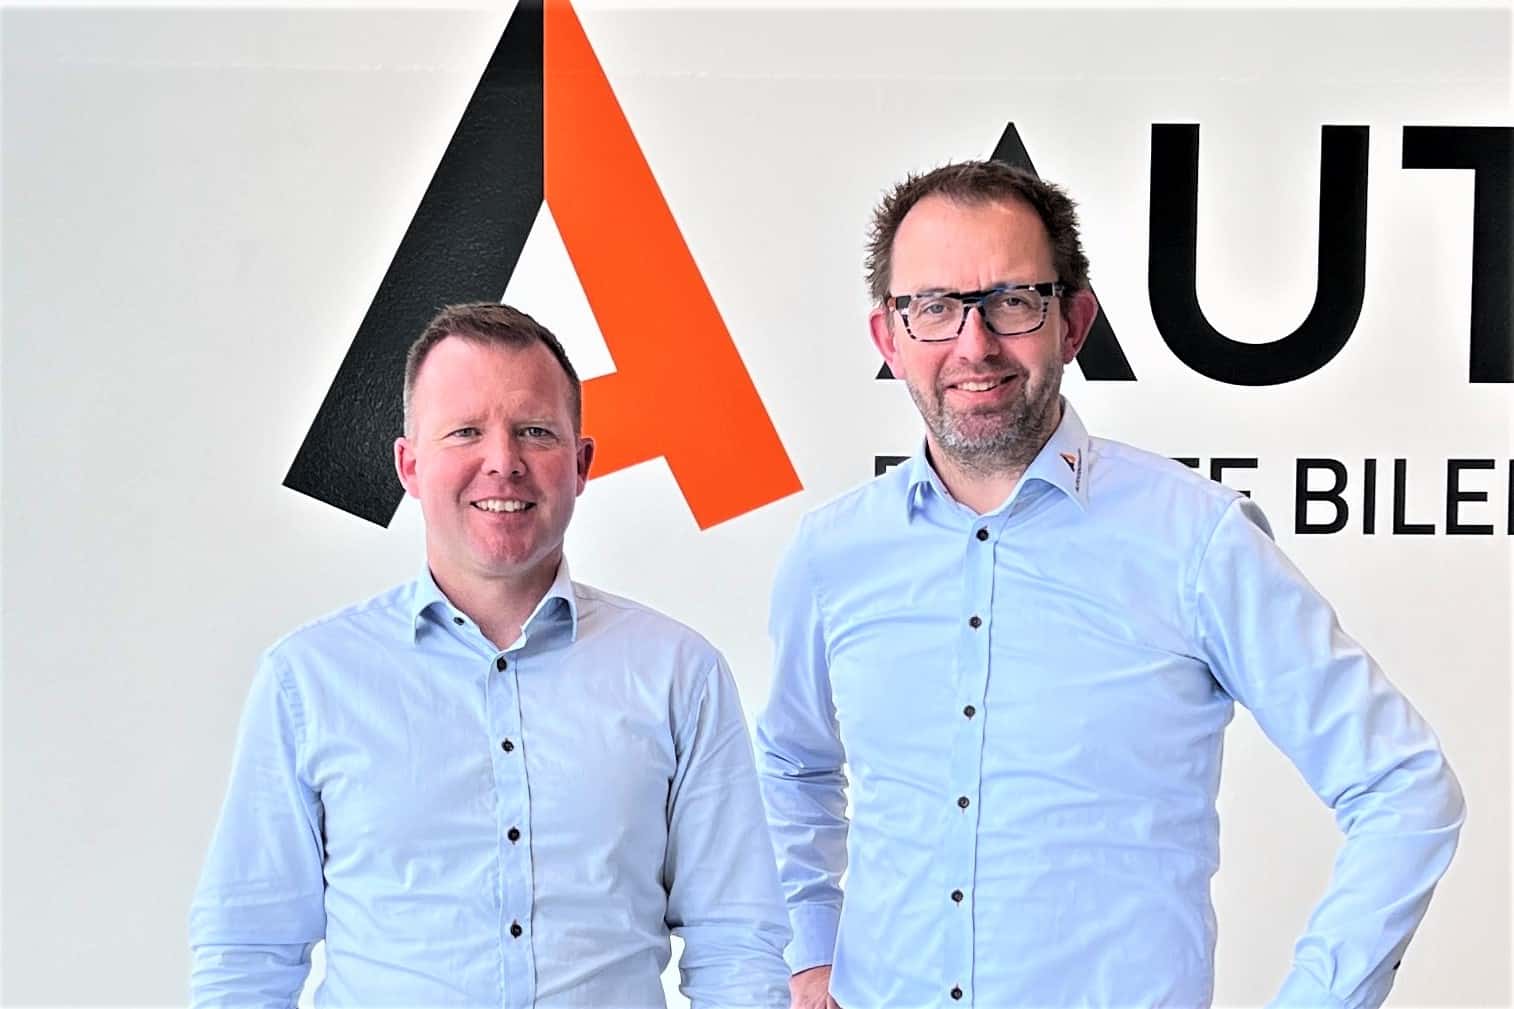 Administrerende direktør Anders Jensen (til venstre) sammen med kommunikations- og marketingchef Jesper Werge.